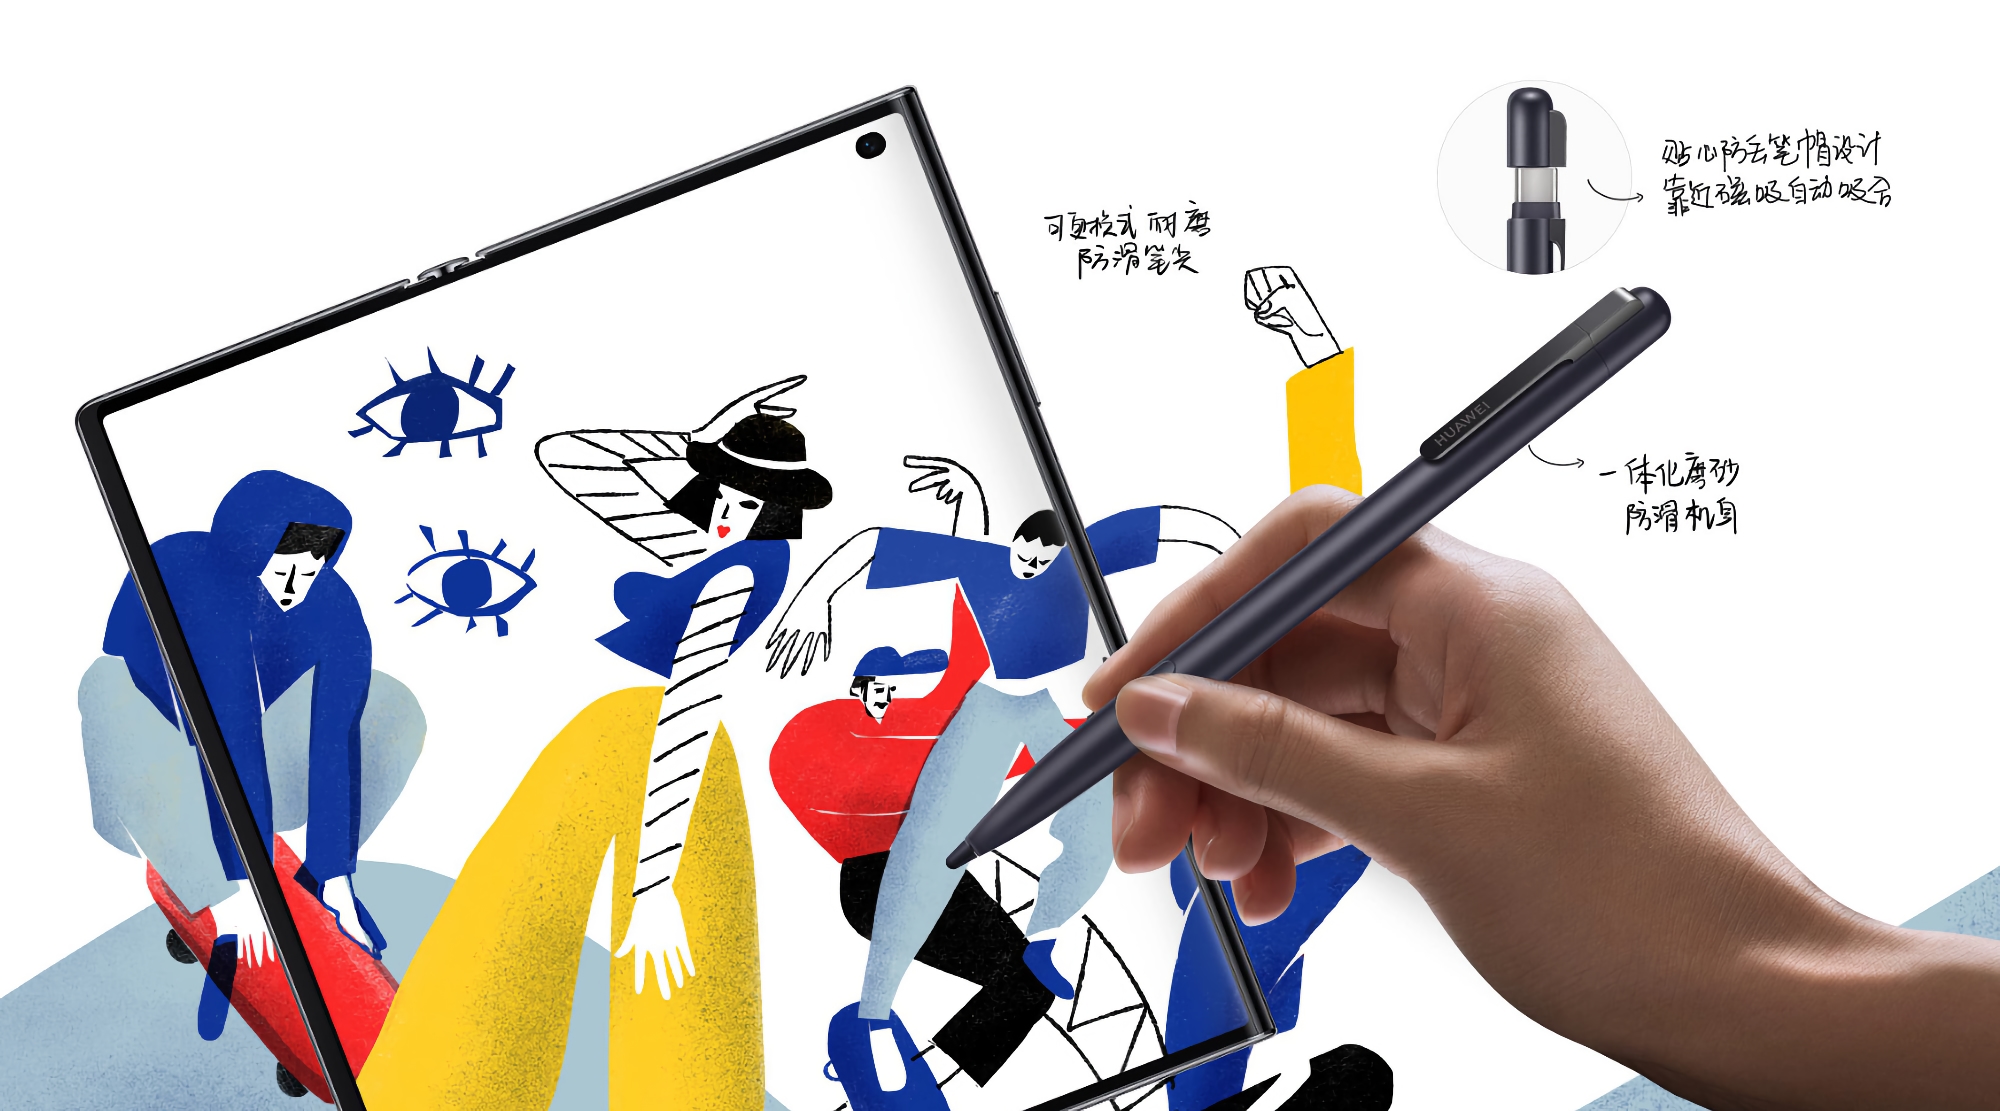 Huawei stellte den M-Pen 2s vor: Stift für das zusammenklappbare Smartphone Mate Xs 2